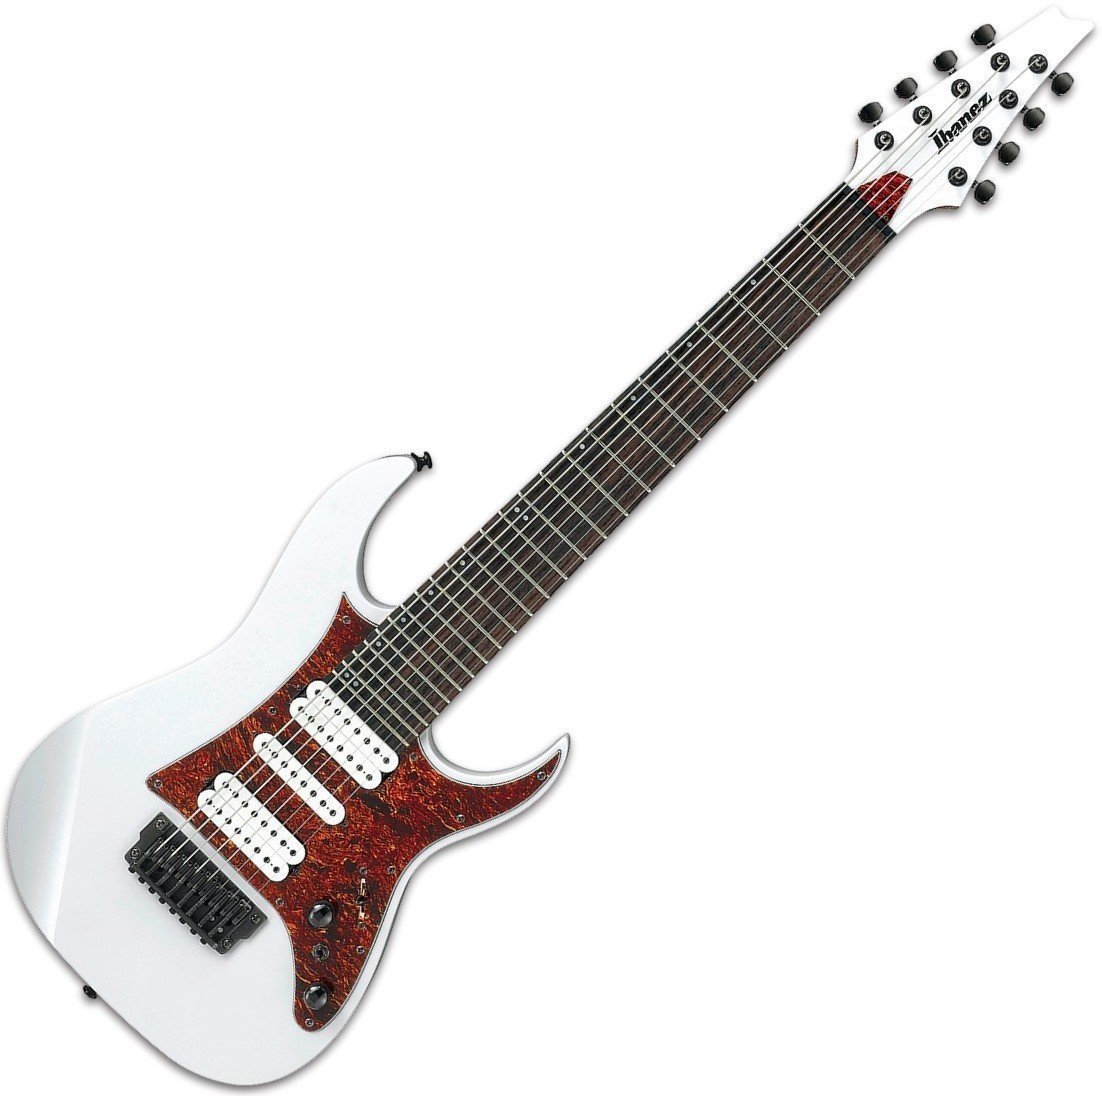 Signature Electric Guitar Ibanez TAM10 8-string Tosin Abasi signature White